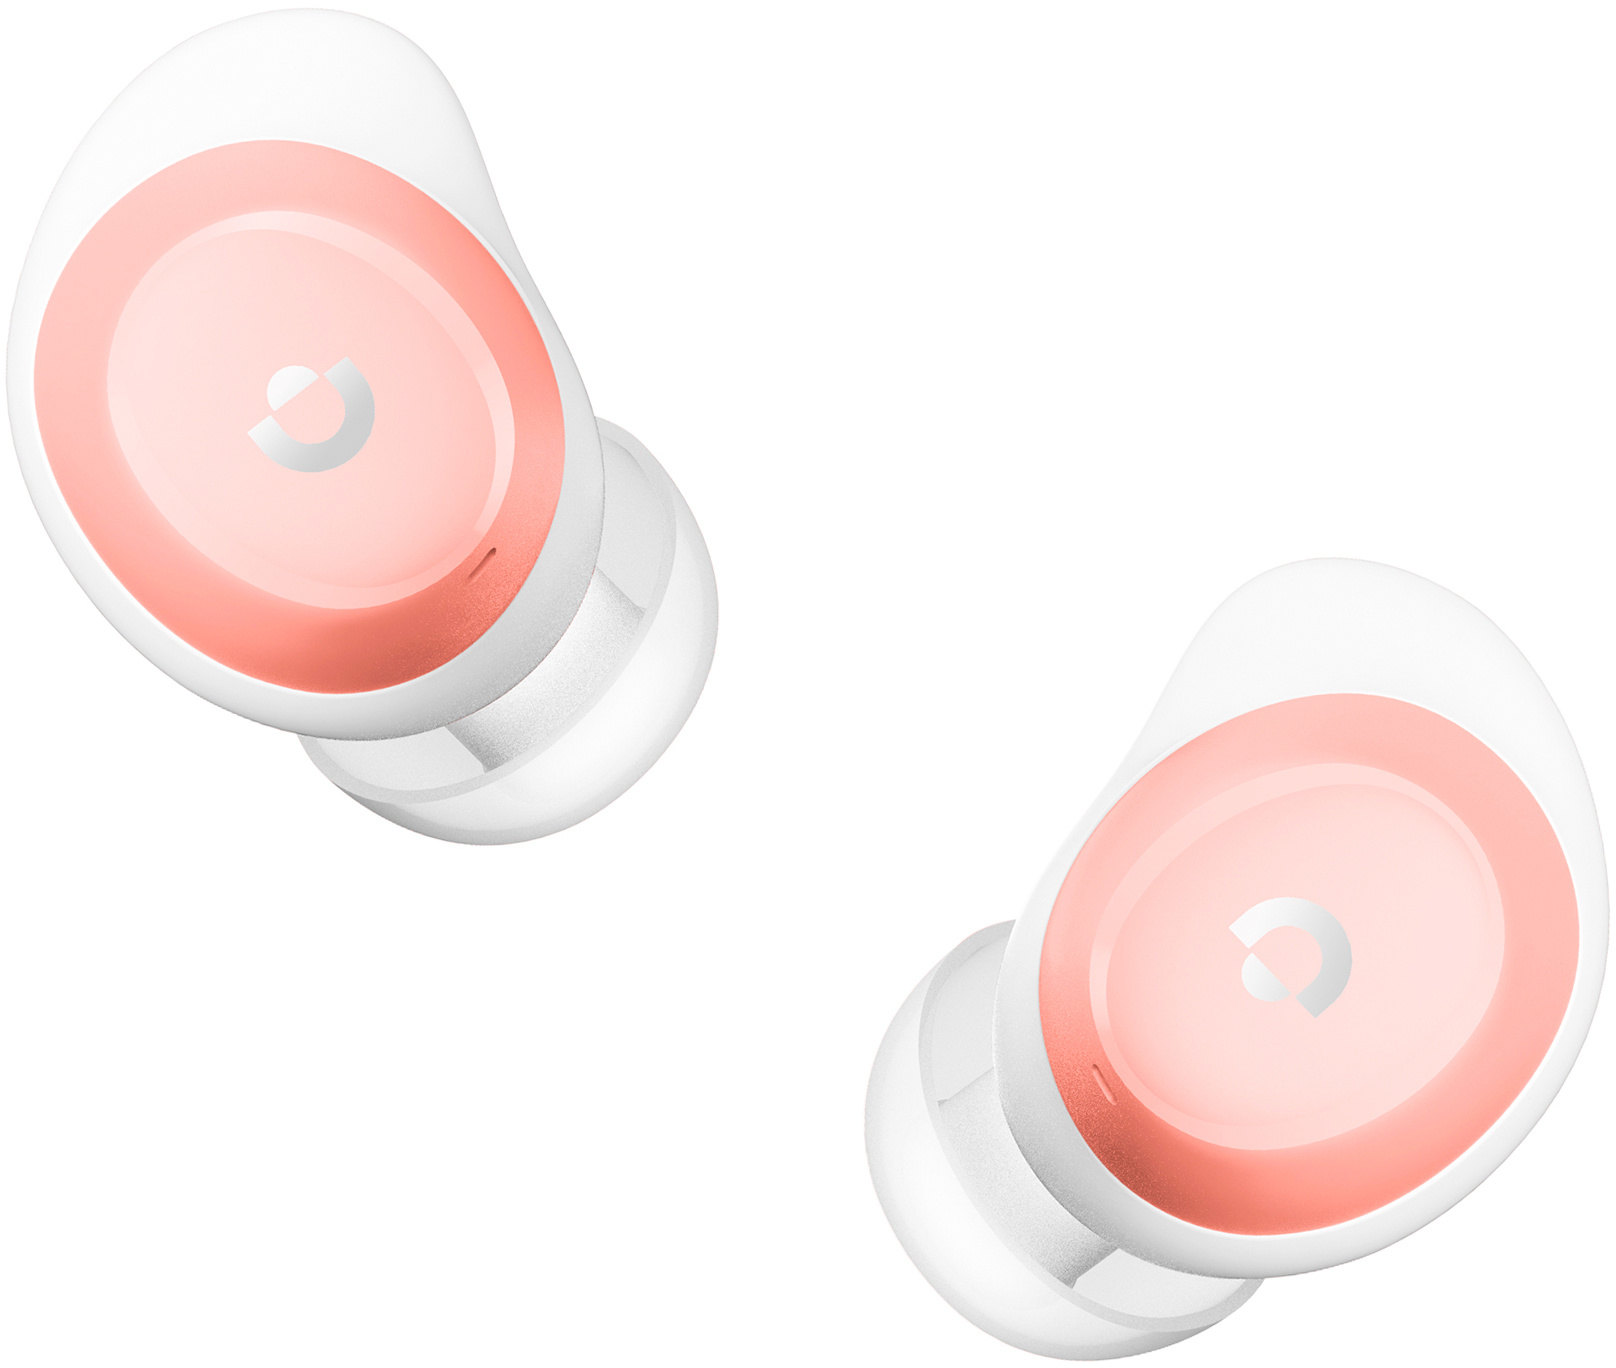 Гарнитура вкладыши A4Tech 2Drumtek B27 TWS розовый/белый беспроводные bluetooth в ушной раковине (B27 BABY PINK)